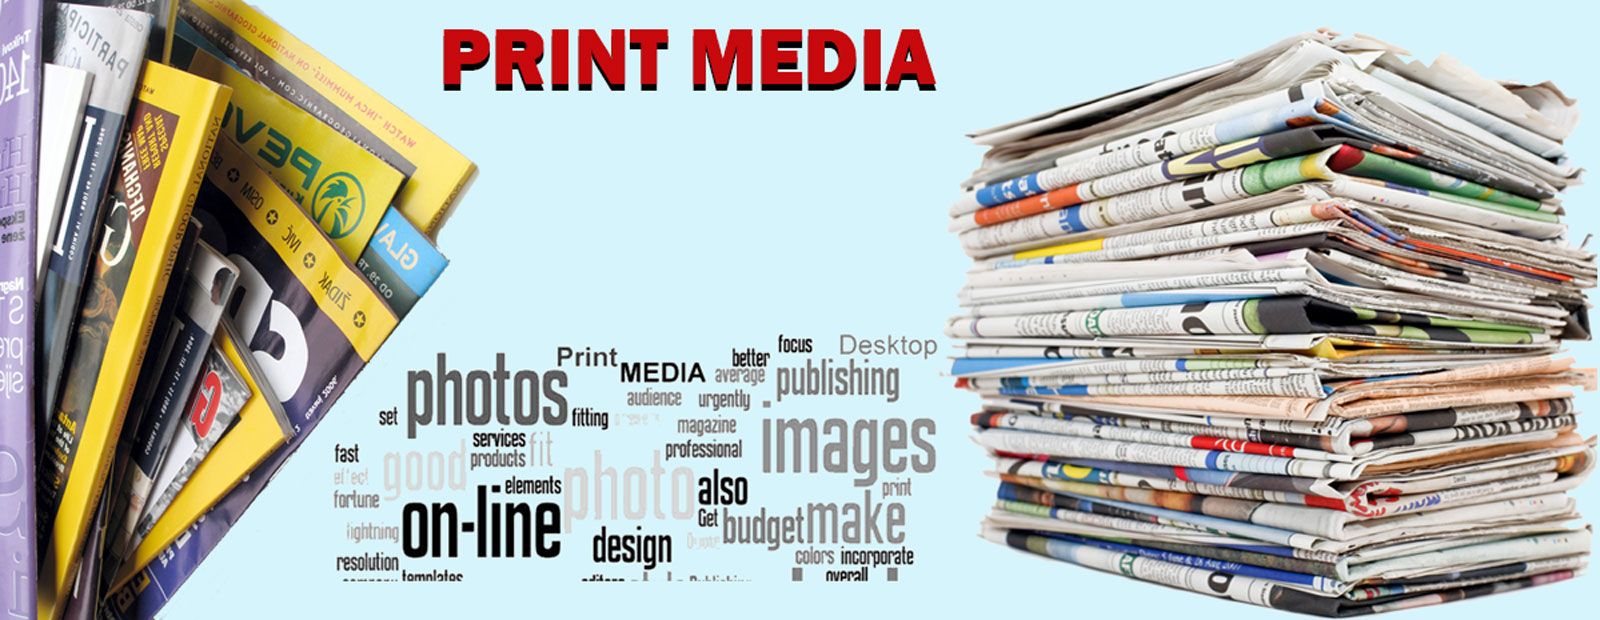 Advertising media is. Print Media. Газеты и журналы. Print Media is. Print Media примеры.